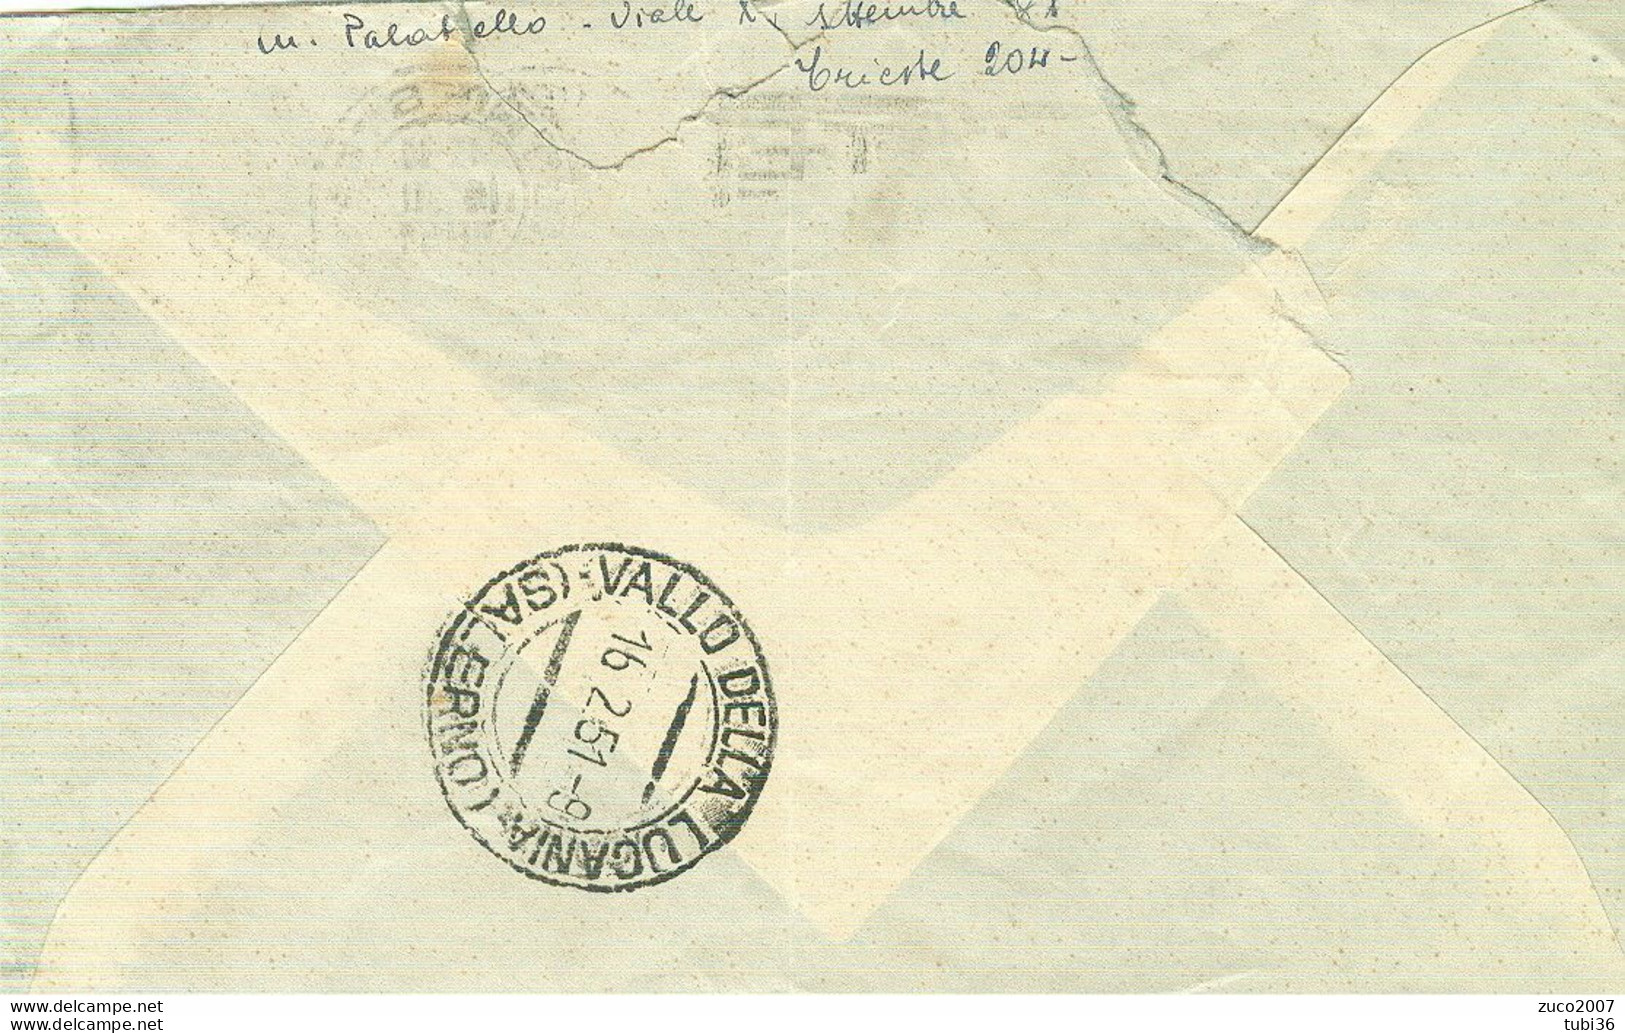 DEMOCRATICA £.20 AMG-FTT.-1951-TIMBRO POSTE TRIESTE TARGHETTA"DONATE SANGUE ALLA BANCA",VALLE DELLA LUCANIA (SALERNO) - Marcophilia